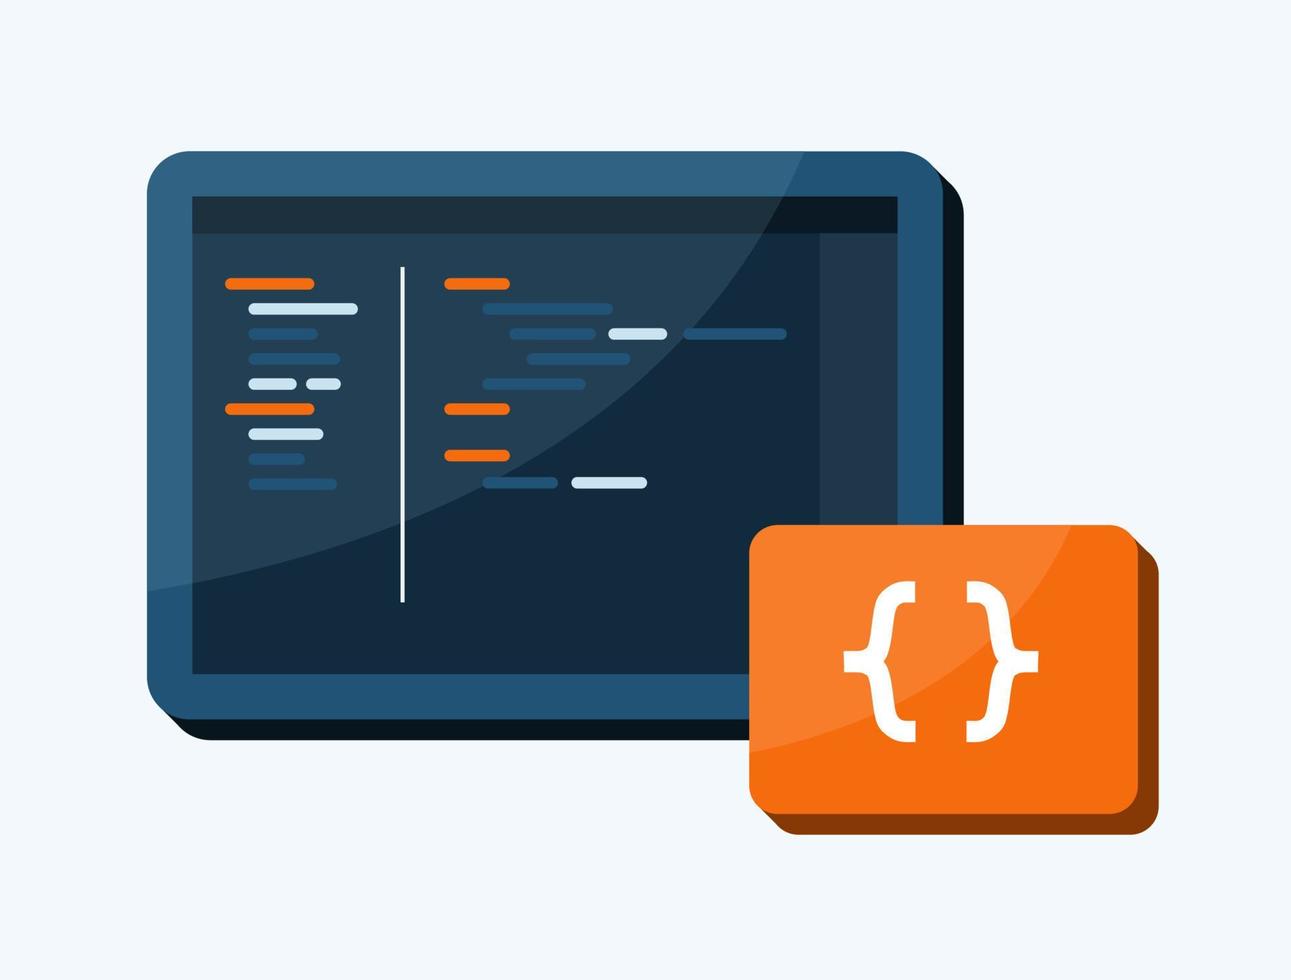 codage programmation vecteur illustration icône orange et bleu foncé écran développeur environnement pour affiche informatique ou élément graphique